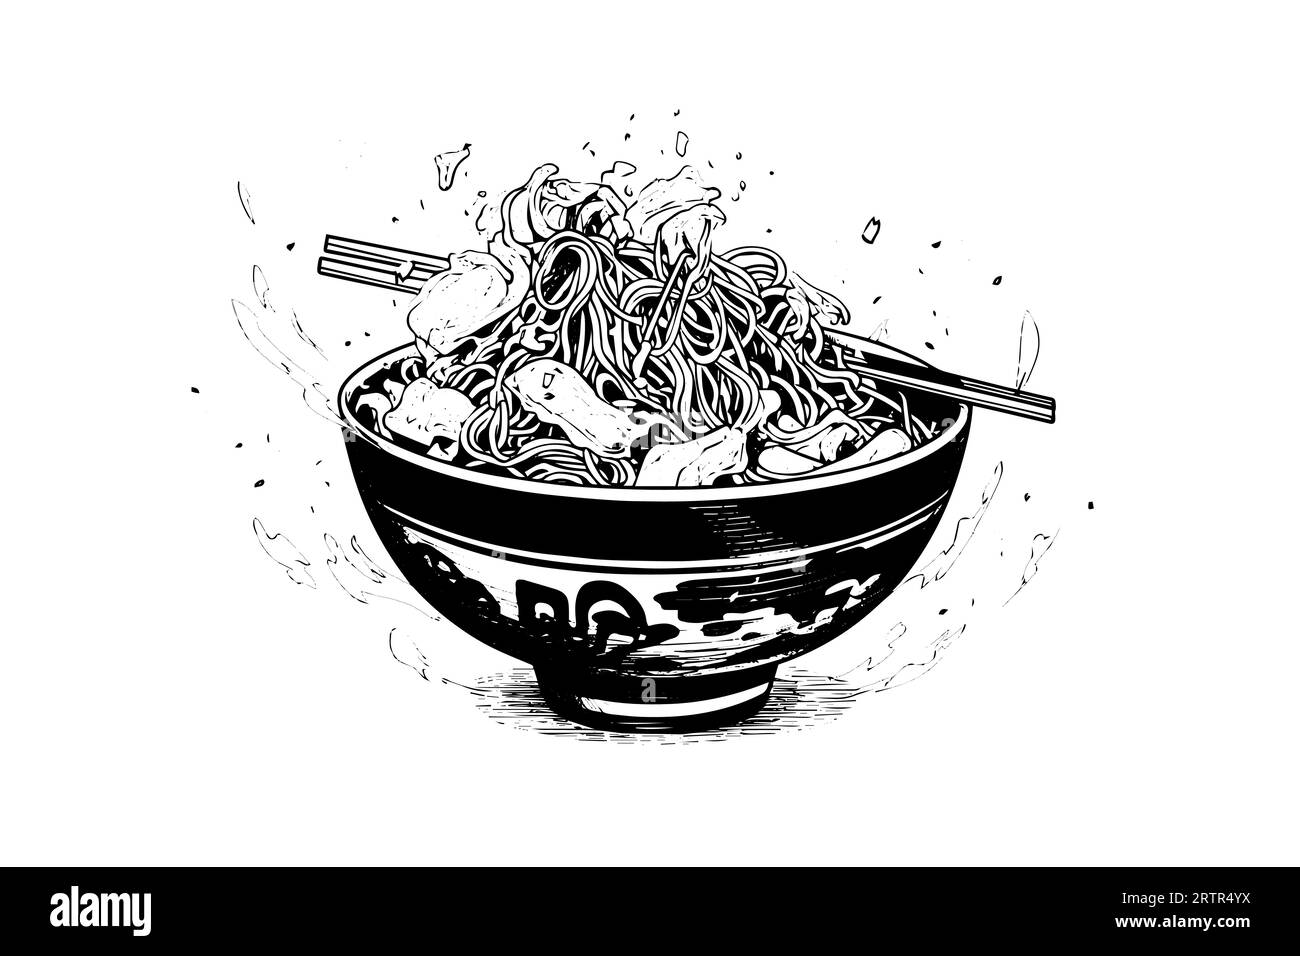 Illustrazione di Ramen Noodle in stile vettoriale per il cibo giapponese con incisione. Informazioni sul logo o sul menu dello schizzo dell'inchiostro. Illustrazione Vettoriale